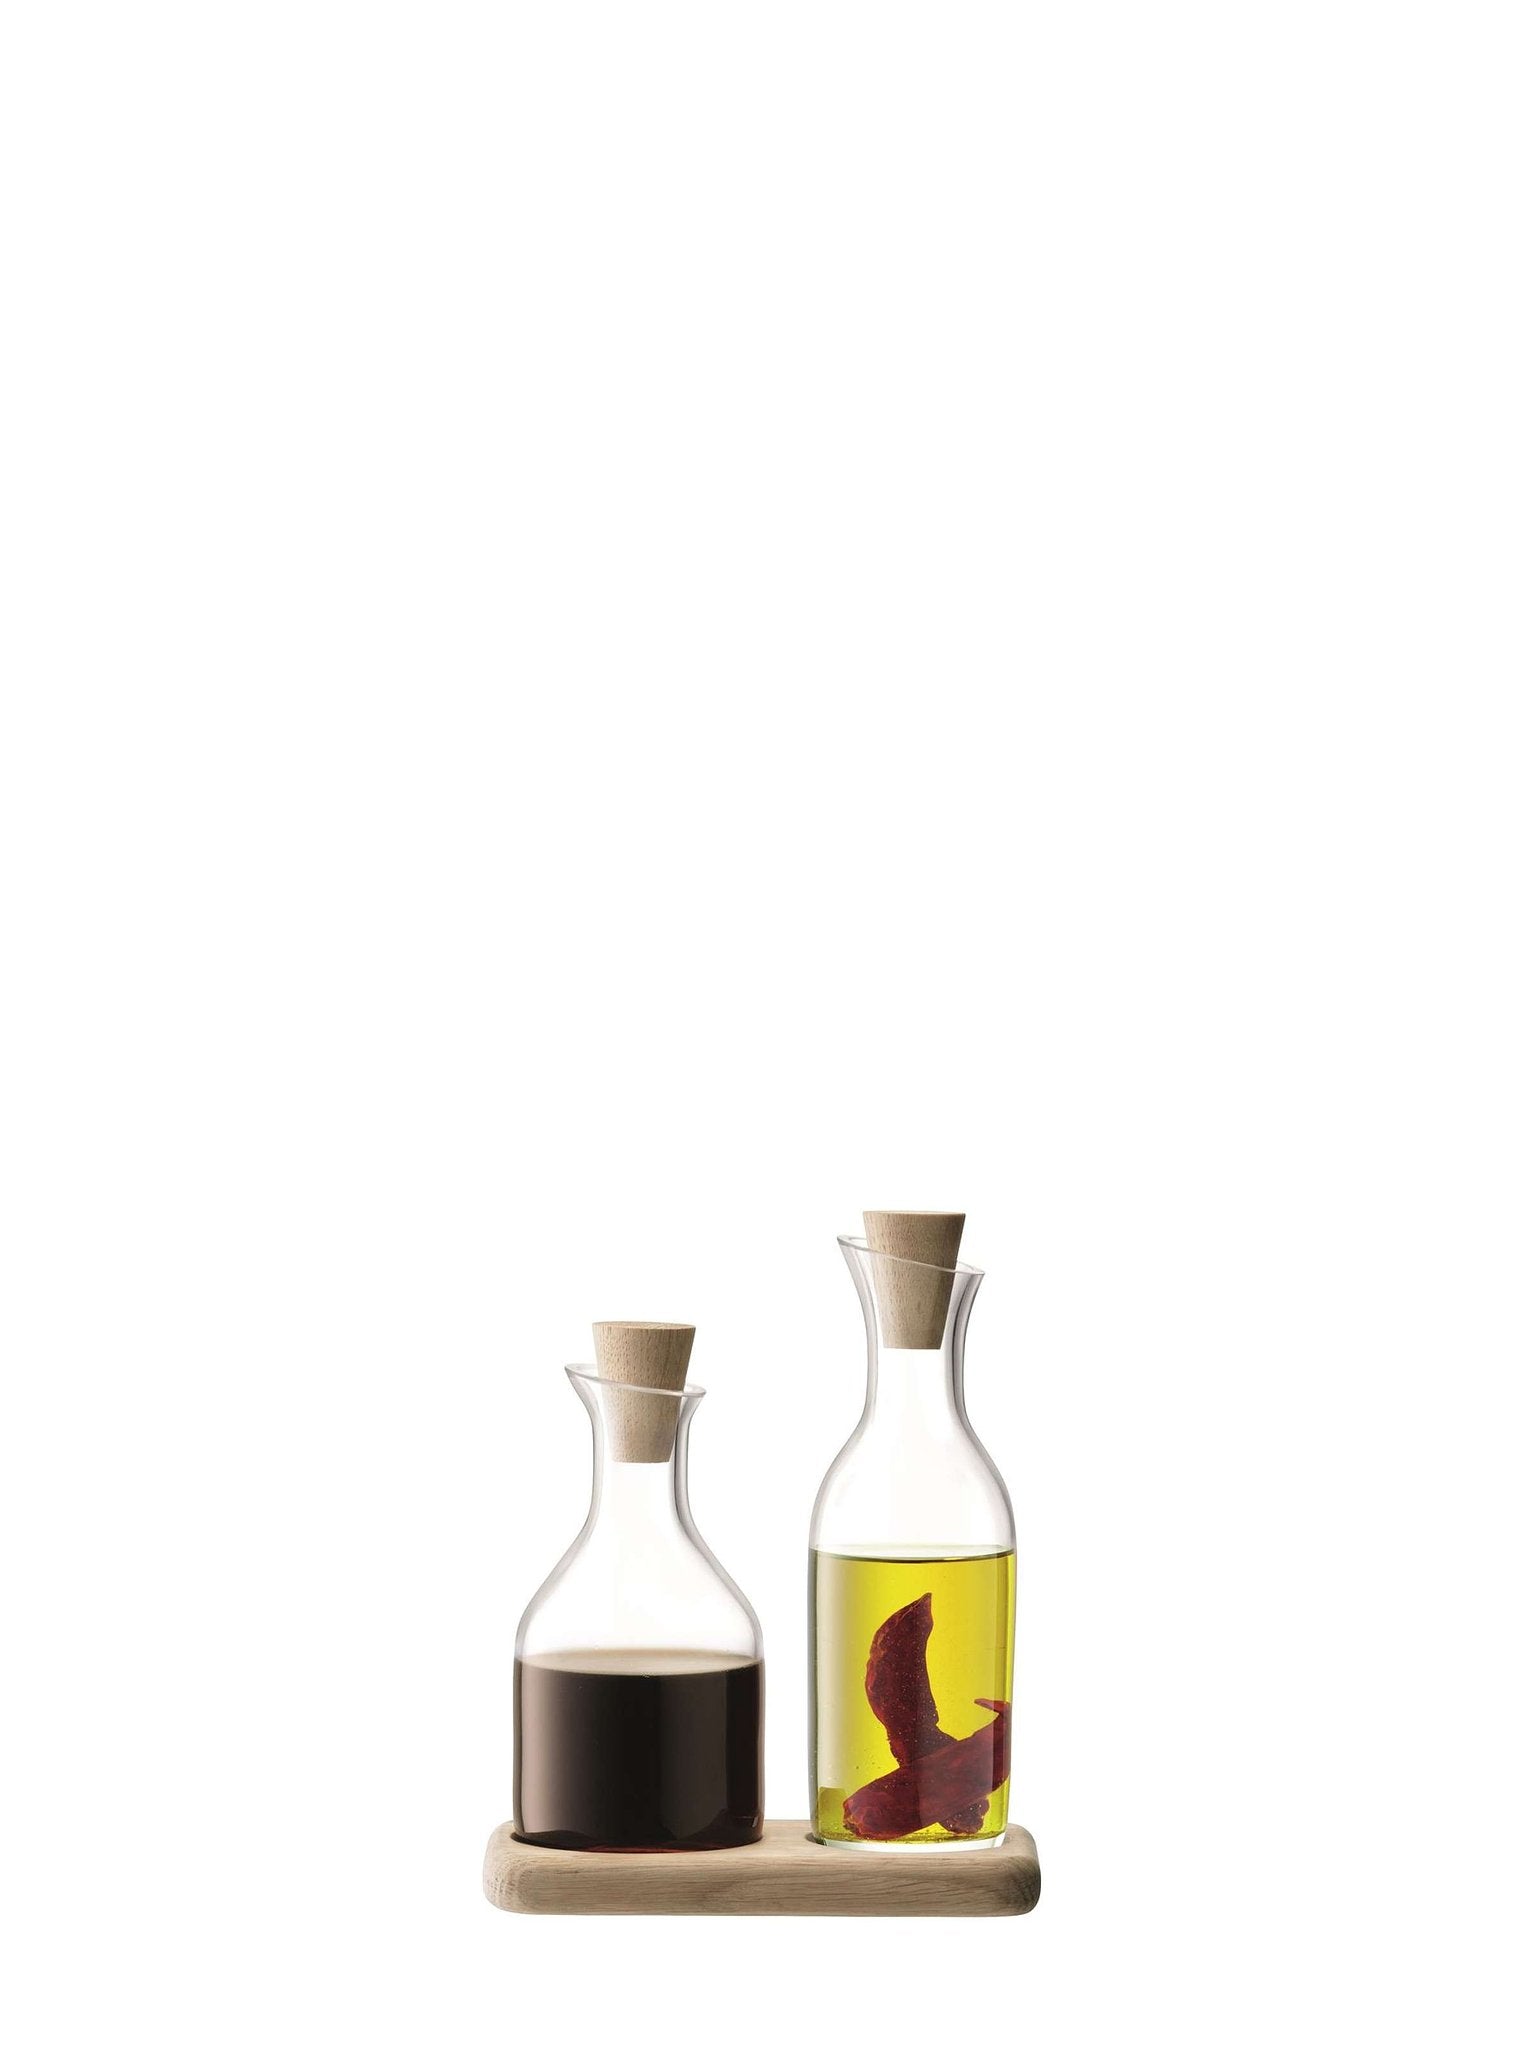 L.S.A. Serve Oil & Vinegar Set of 2 Pieces